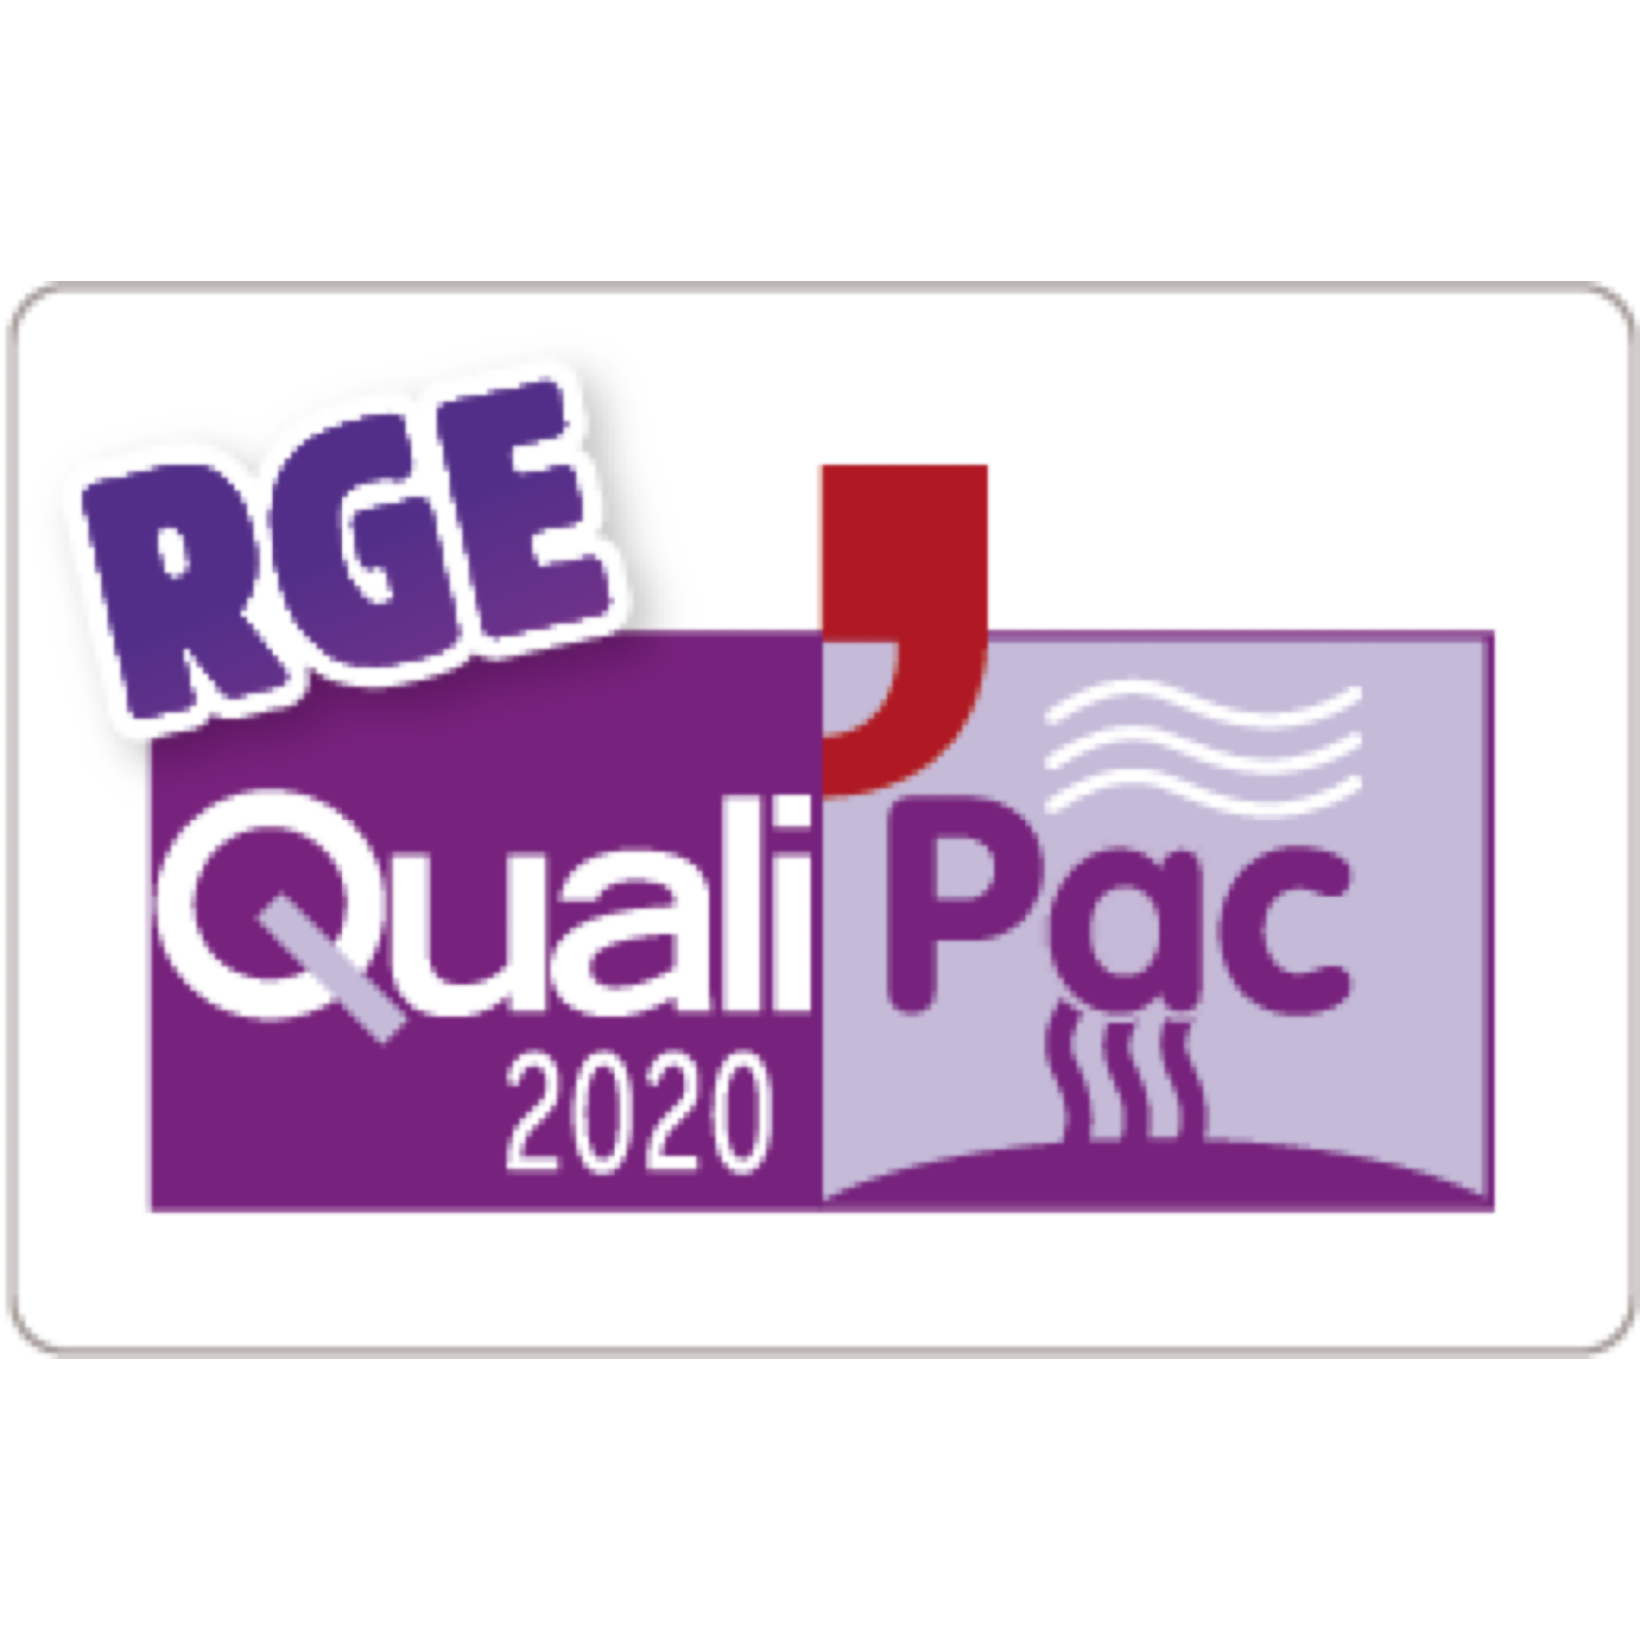 Logo violet sur fond blanc comprenant les inscriptions "QualiPac" 2020 RGE